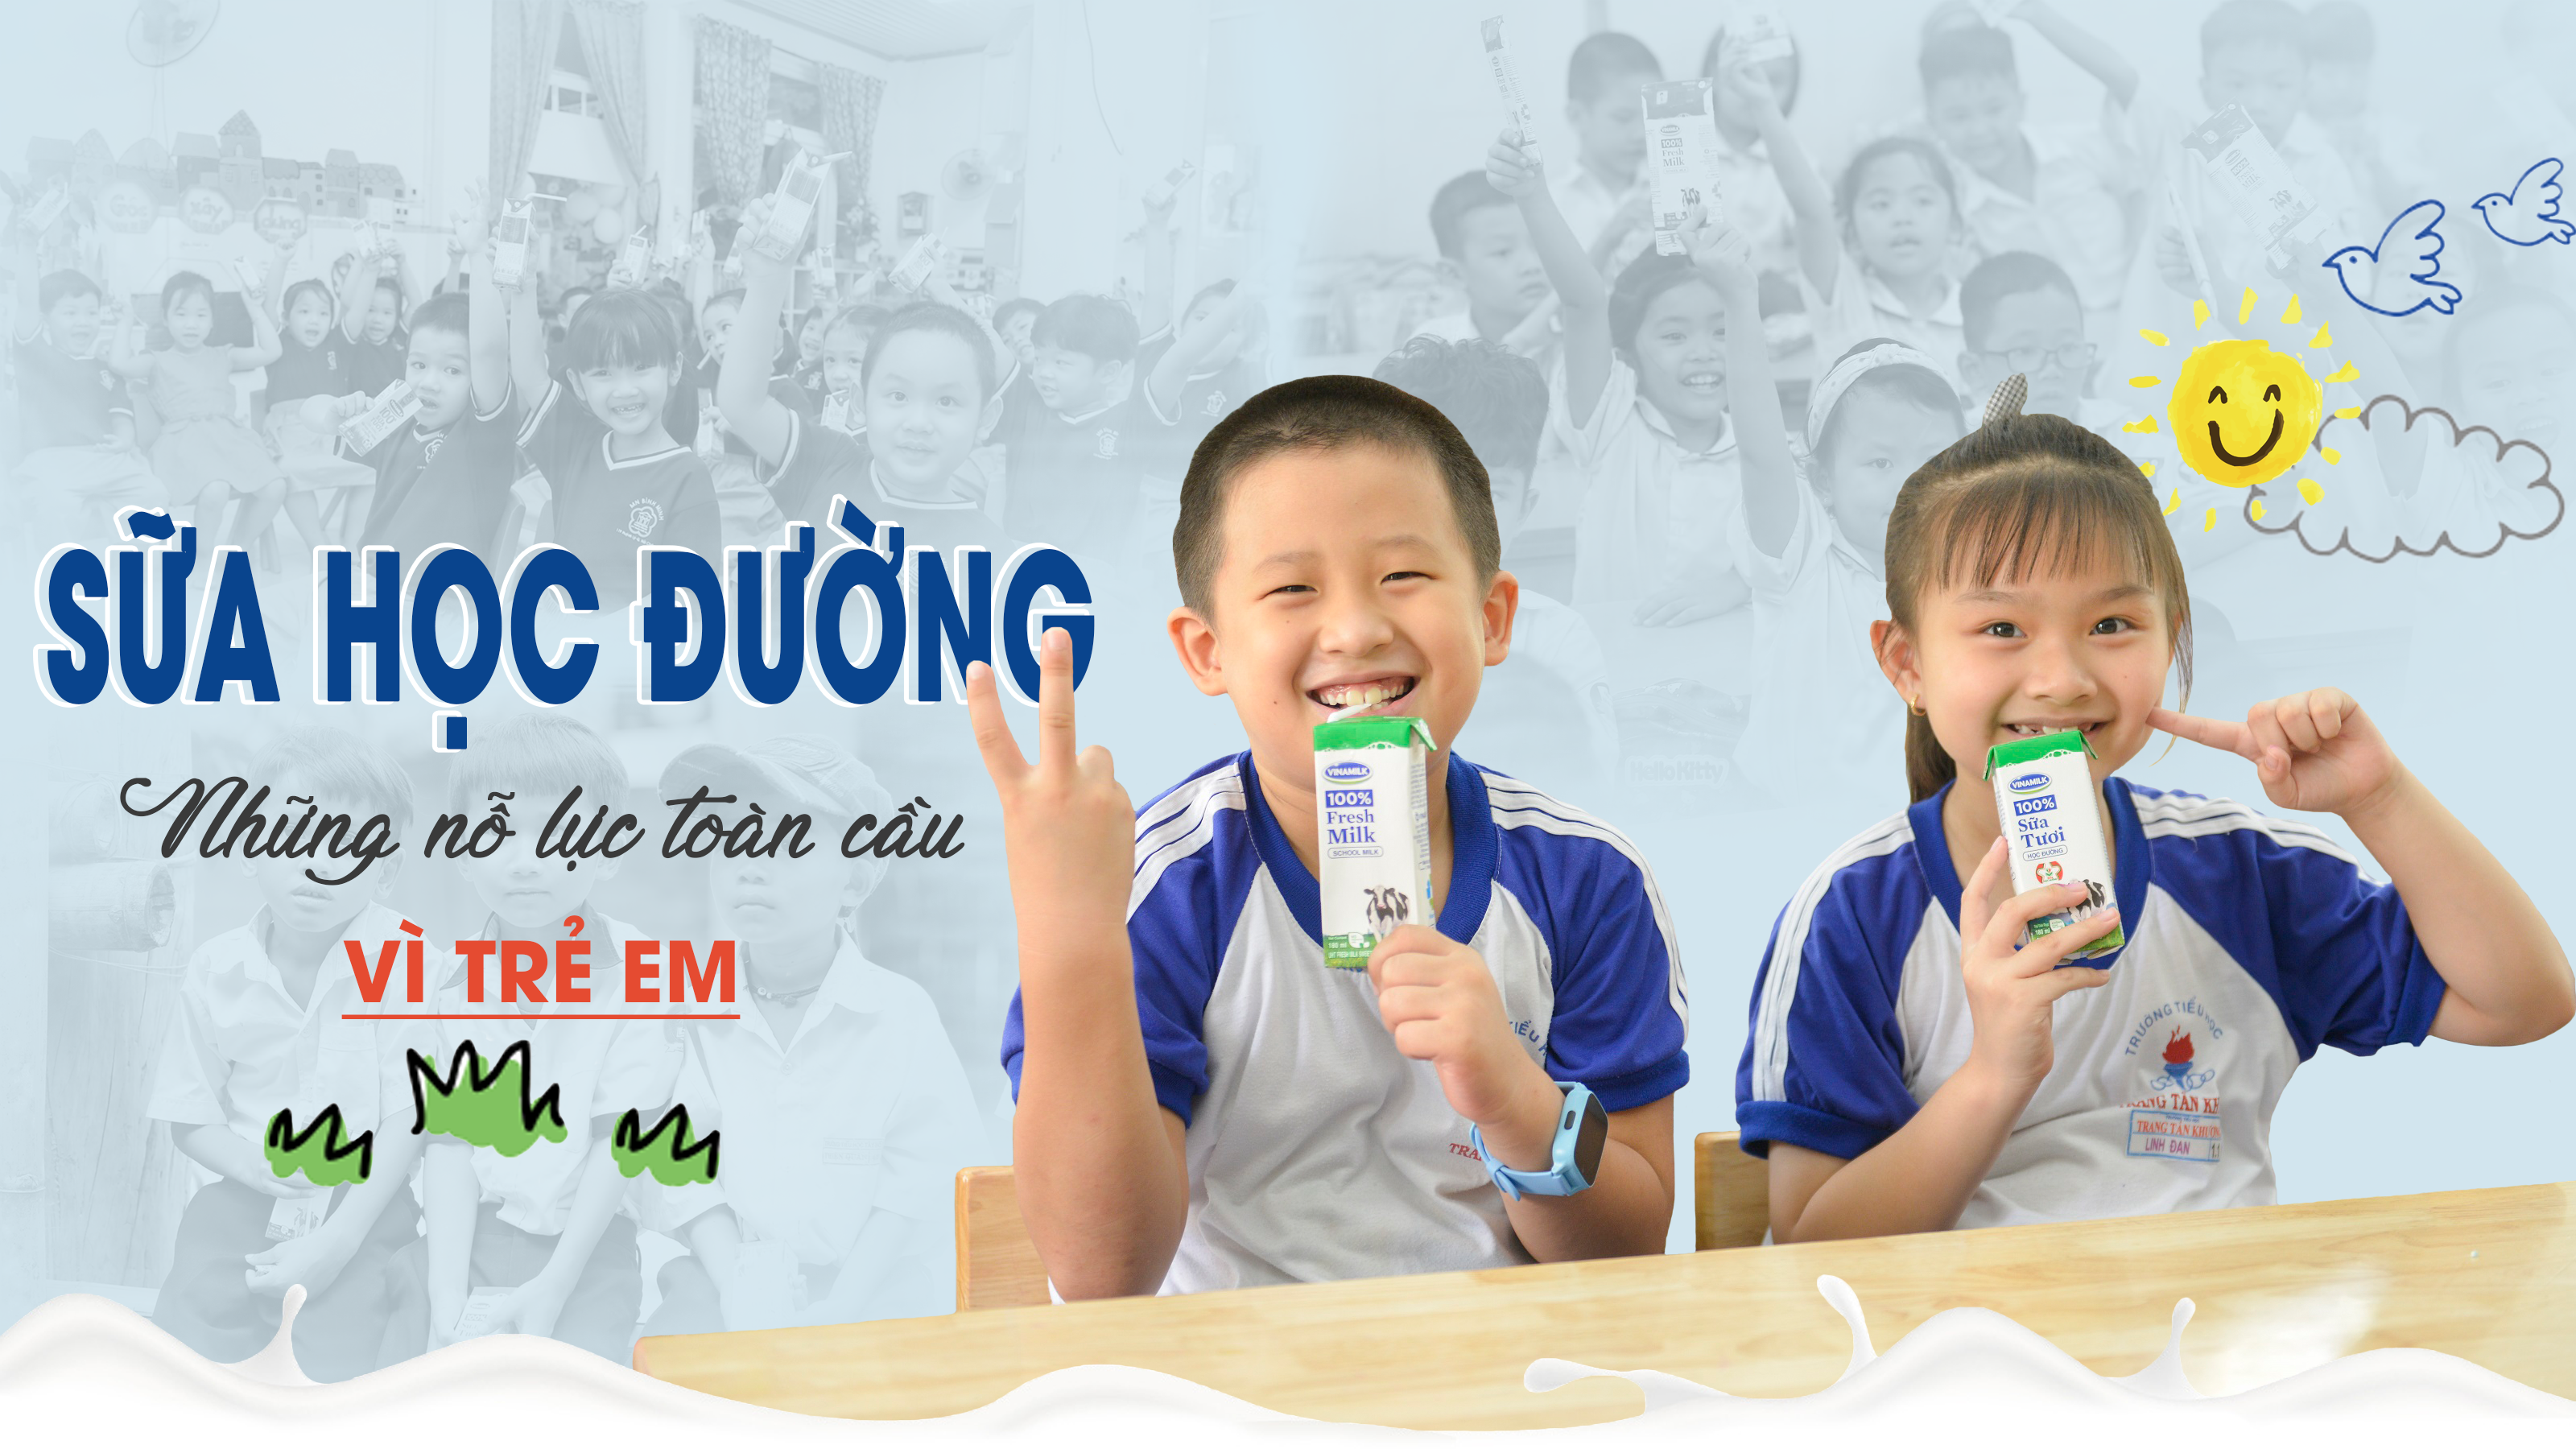 Sữa học đường - Những nỗ lực toàn cầu vì trẻ em